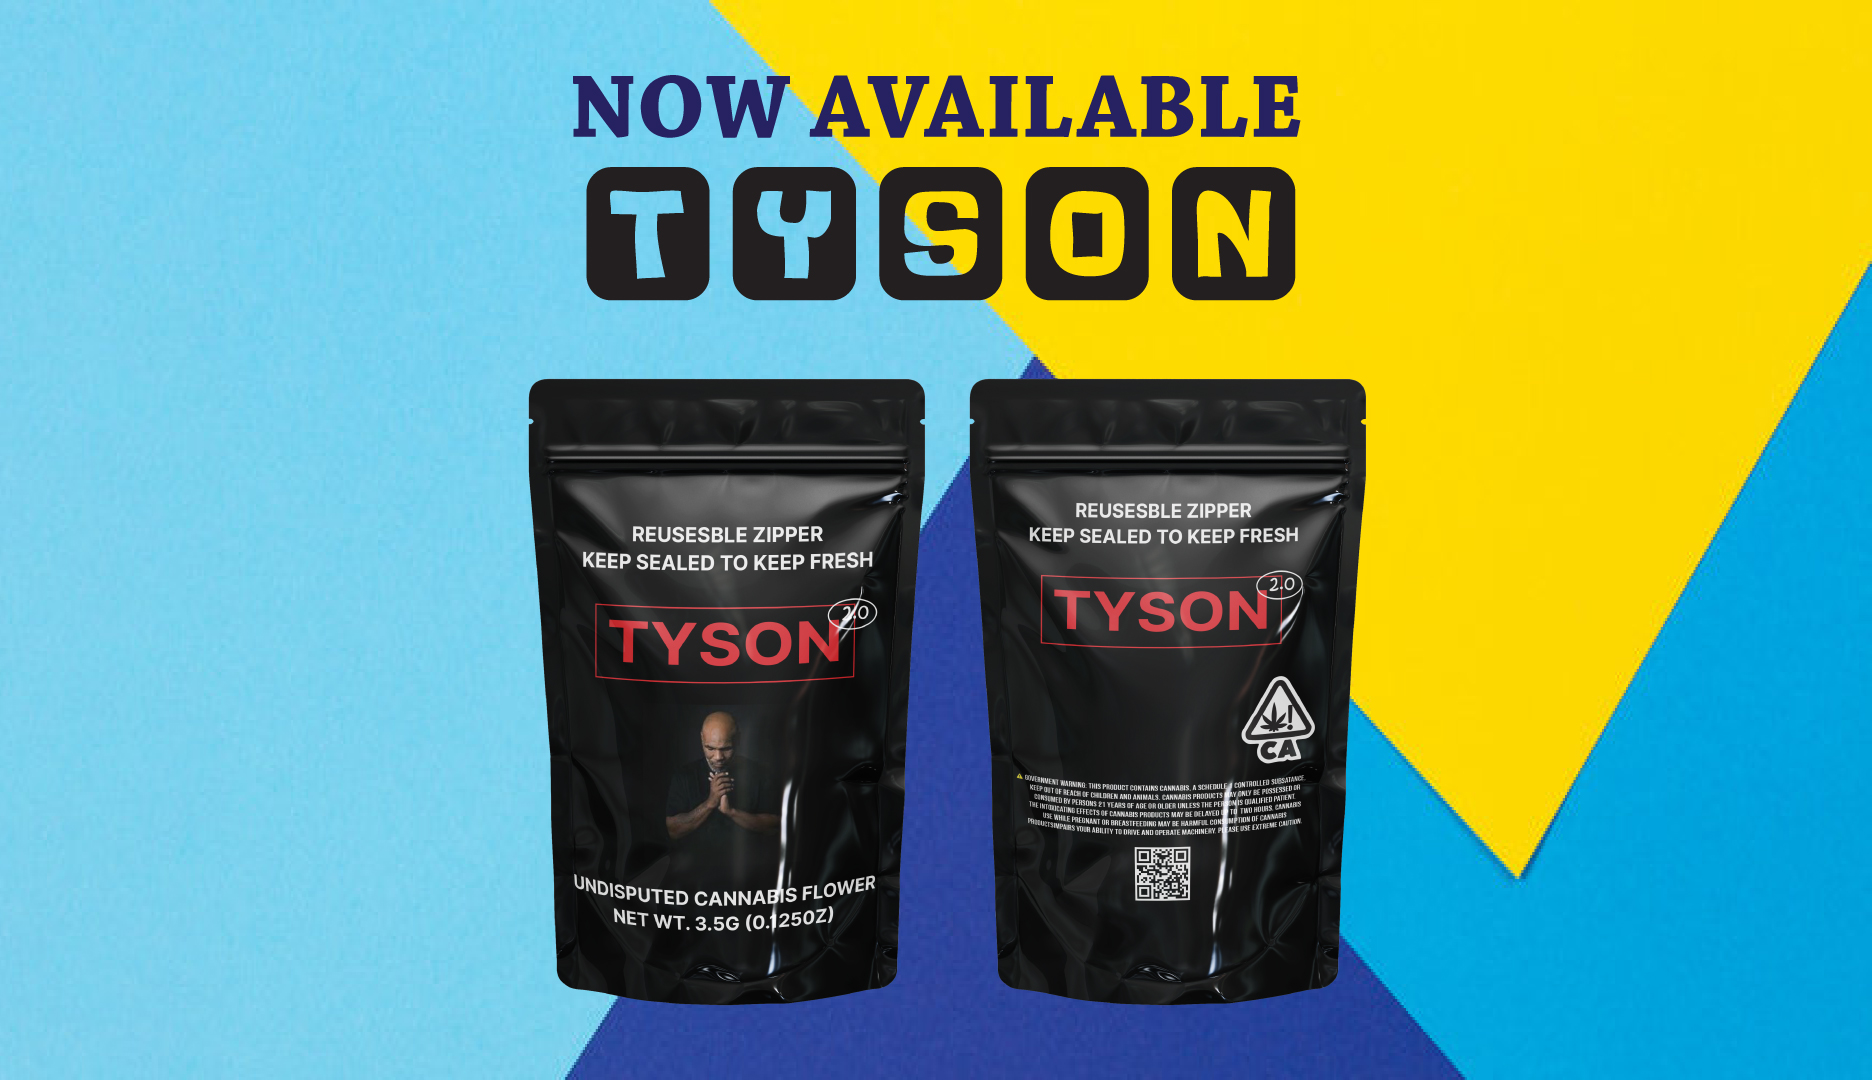 Toyson-113